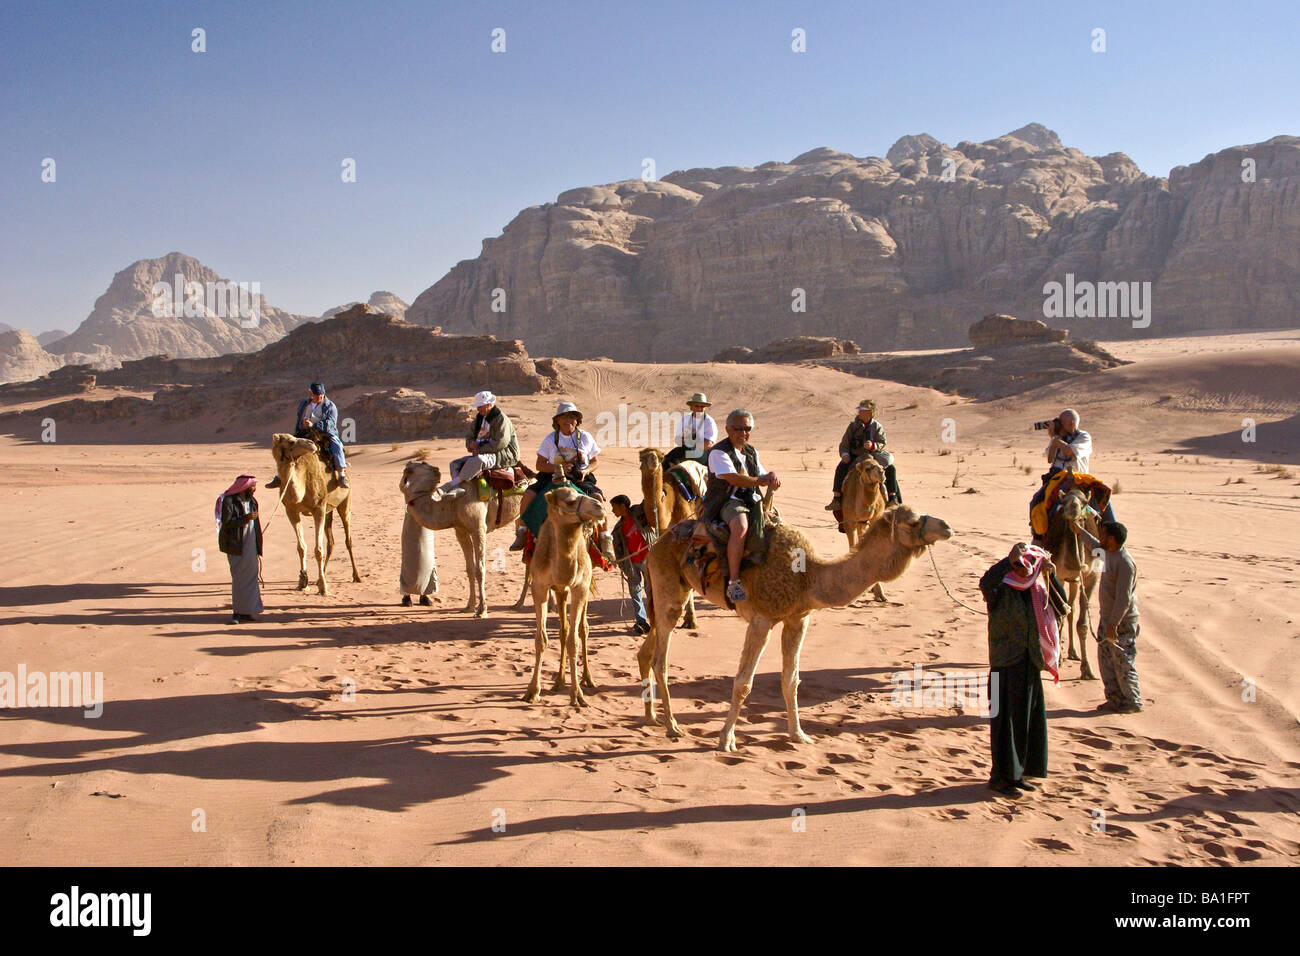 Los turistas montar camellos en el desierto, Wadi Rum, Jordania Foto de stock